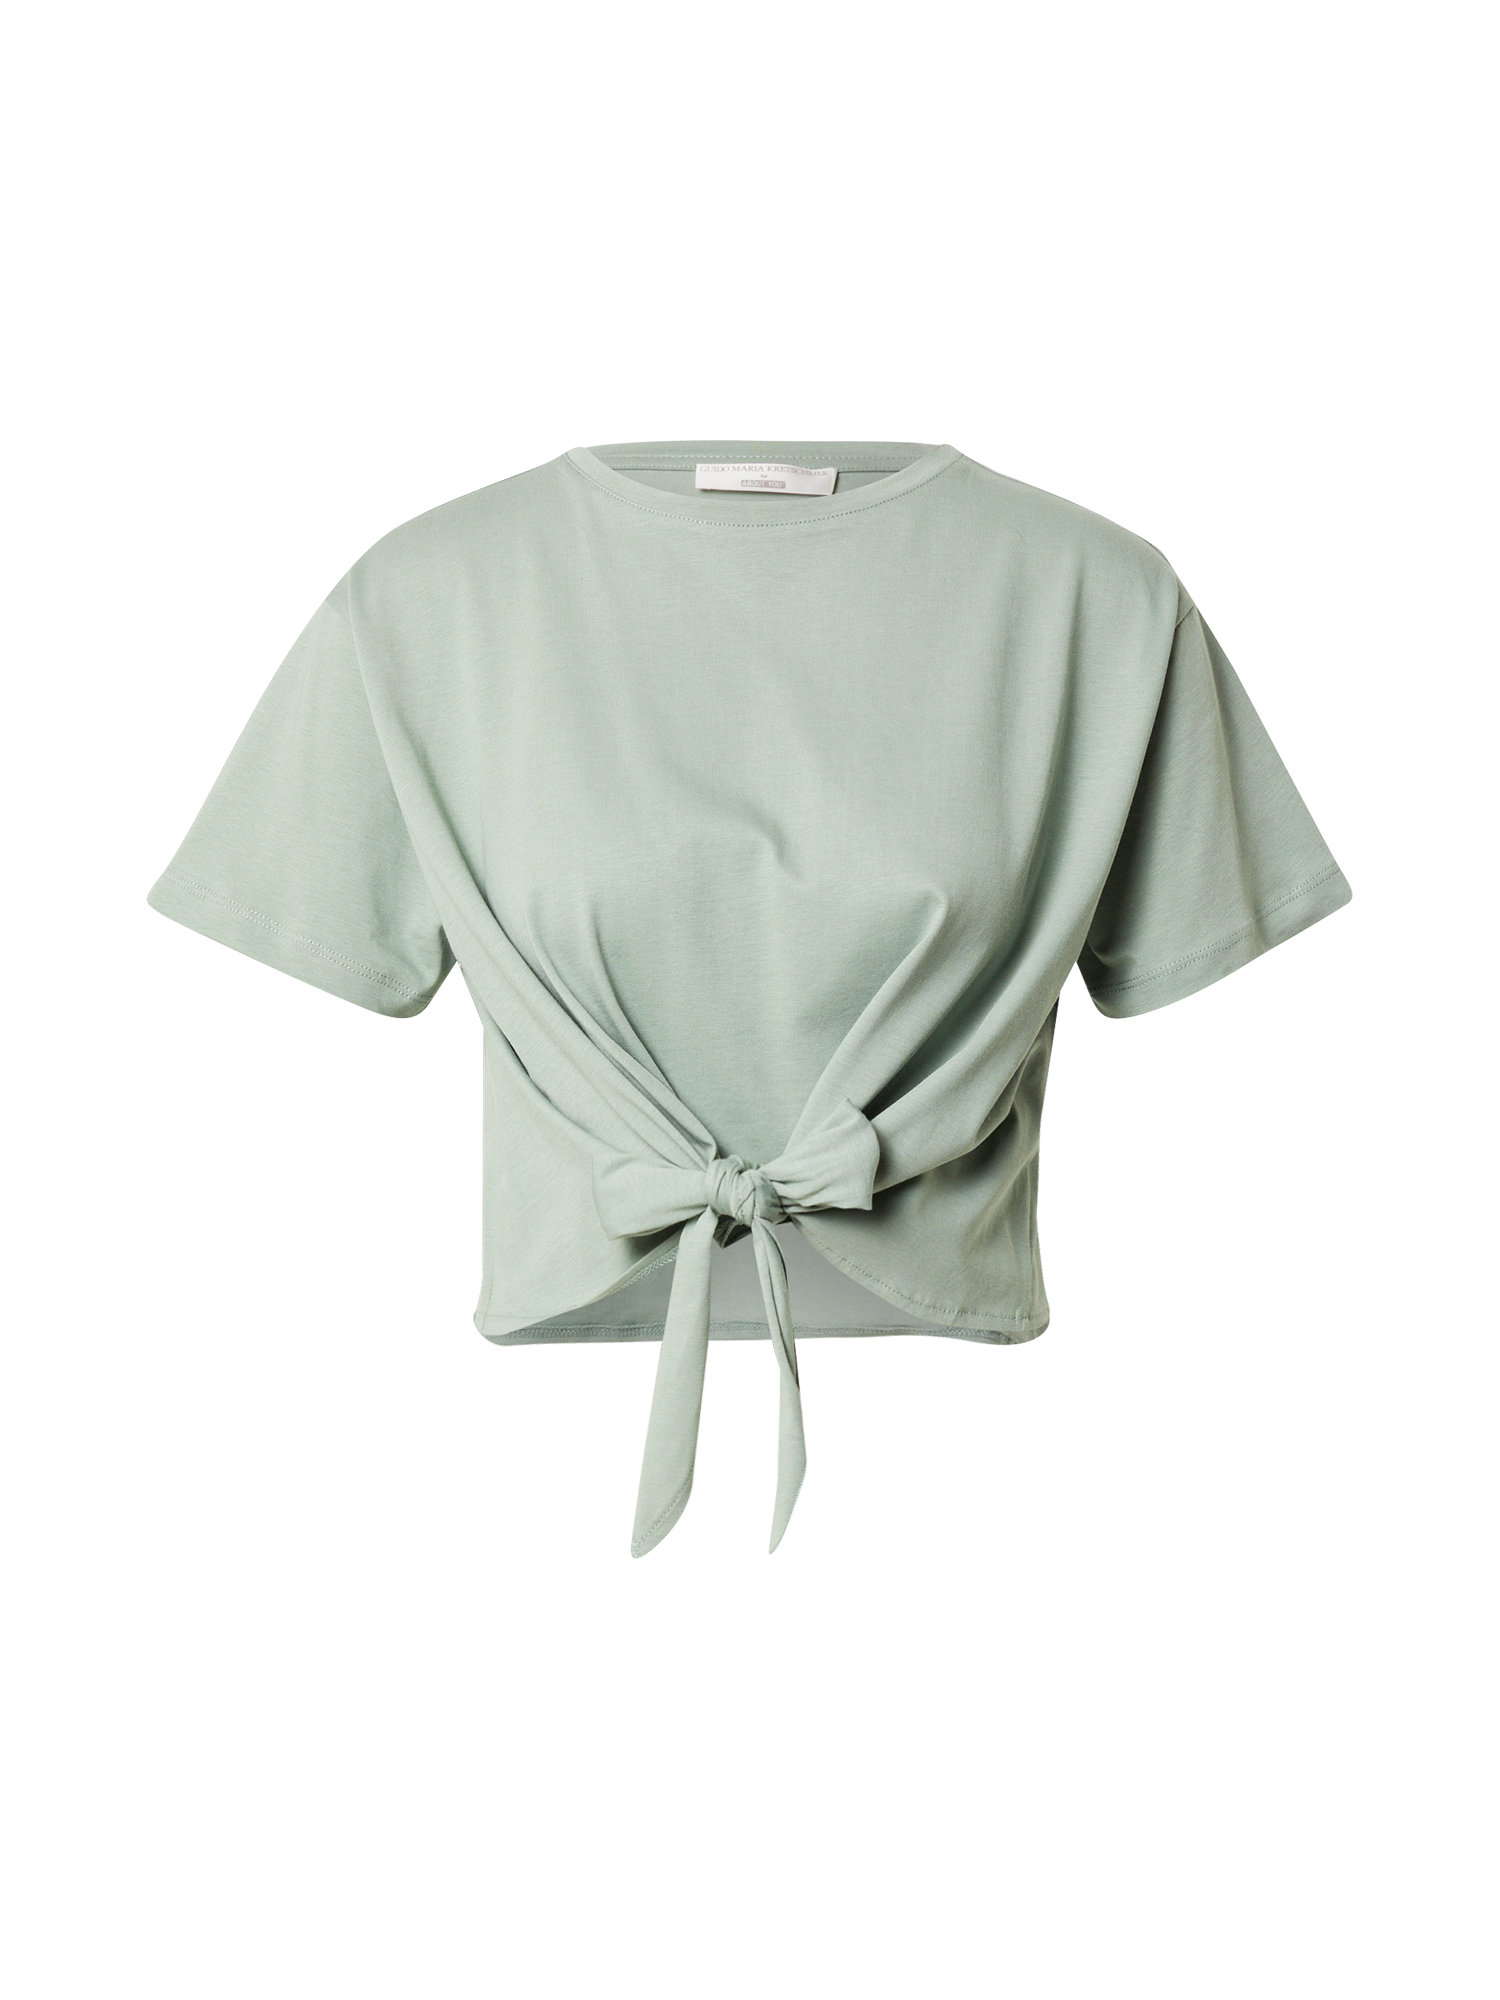 Koszulki & topy HlyfR Guido Maria Kretschmer Collection Koszulka Sheila w kolorze Pastelowy Zielonym 